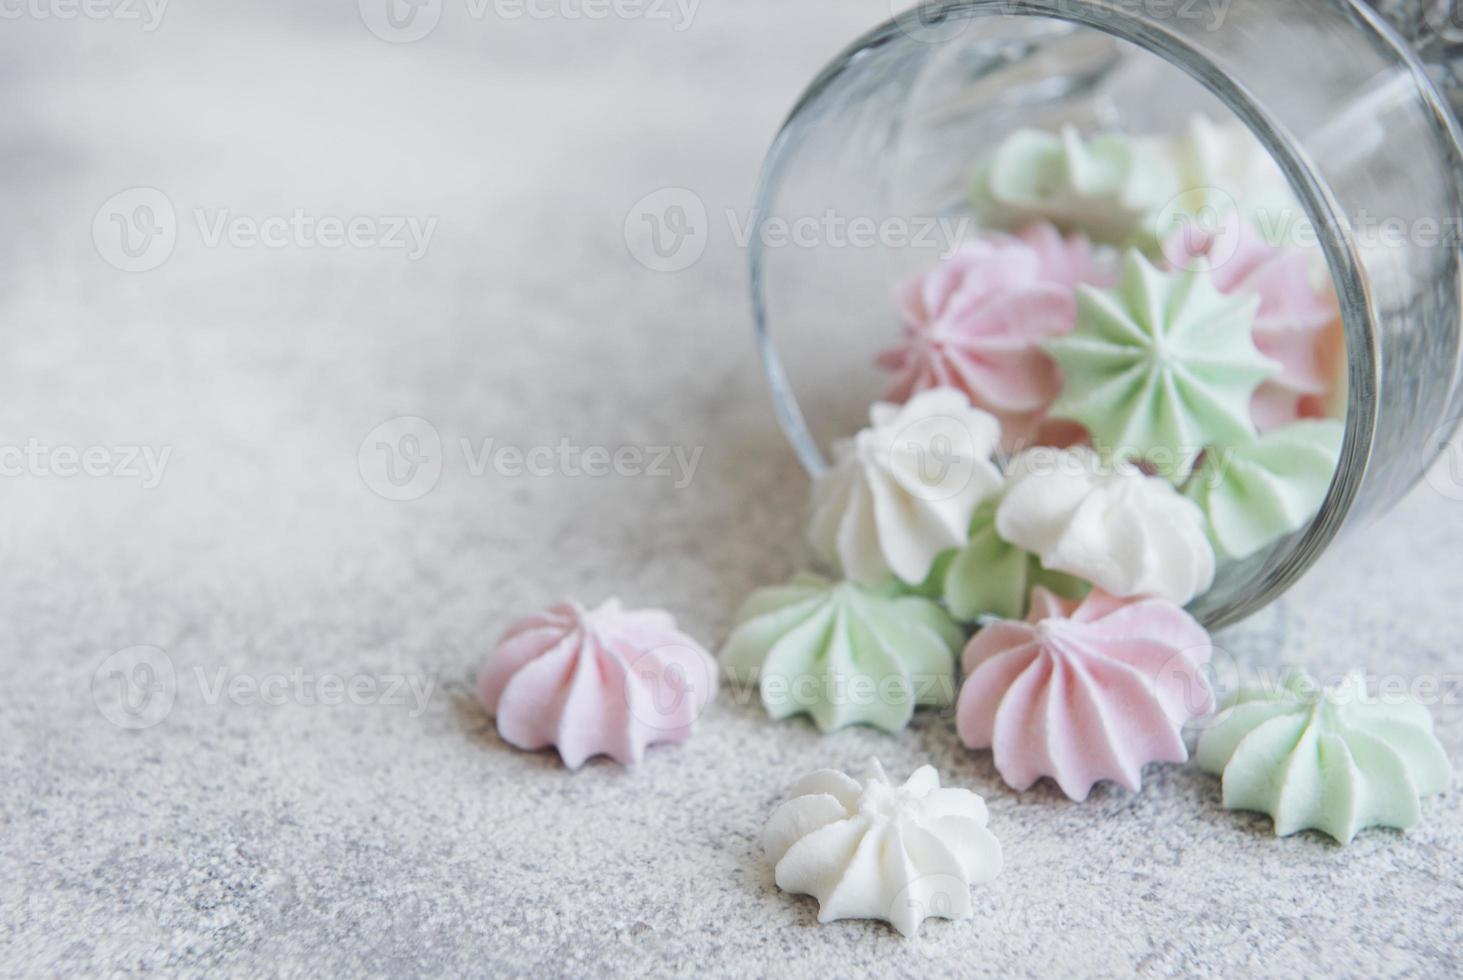 pequenos merengues brancos rosa e verdes no copo foto